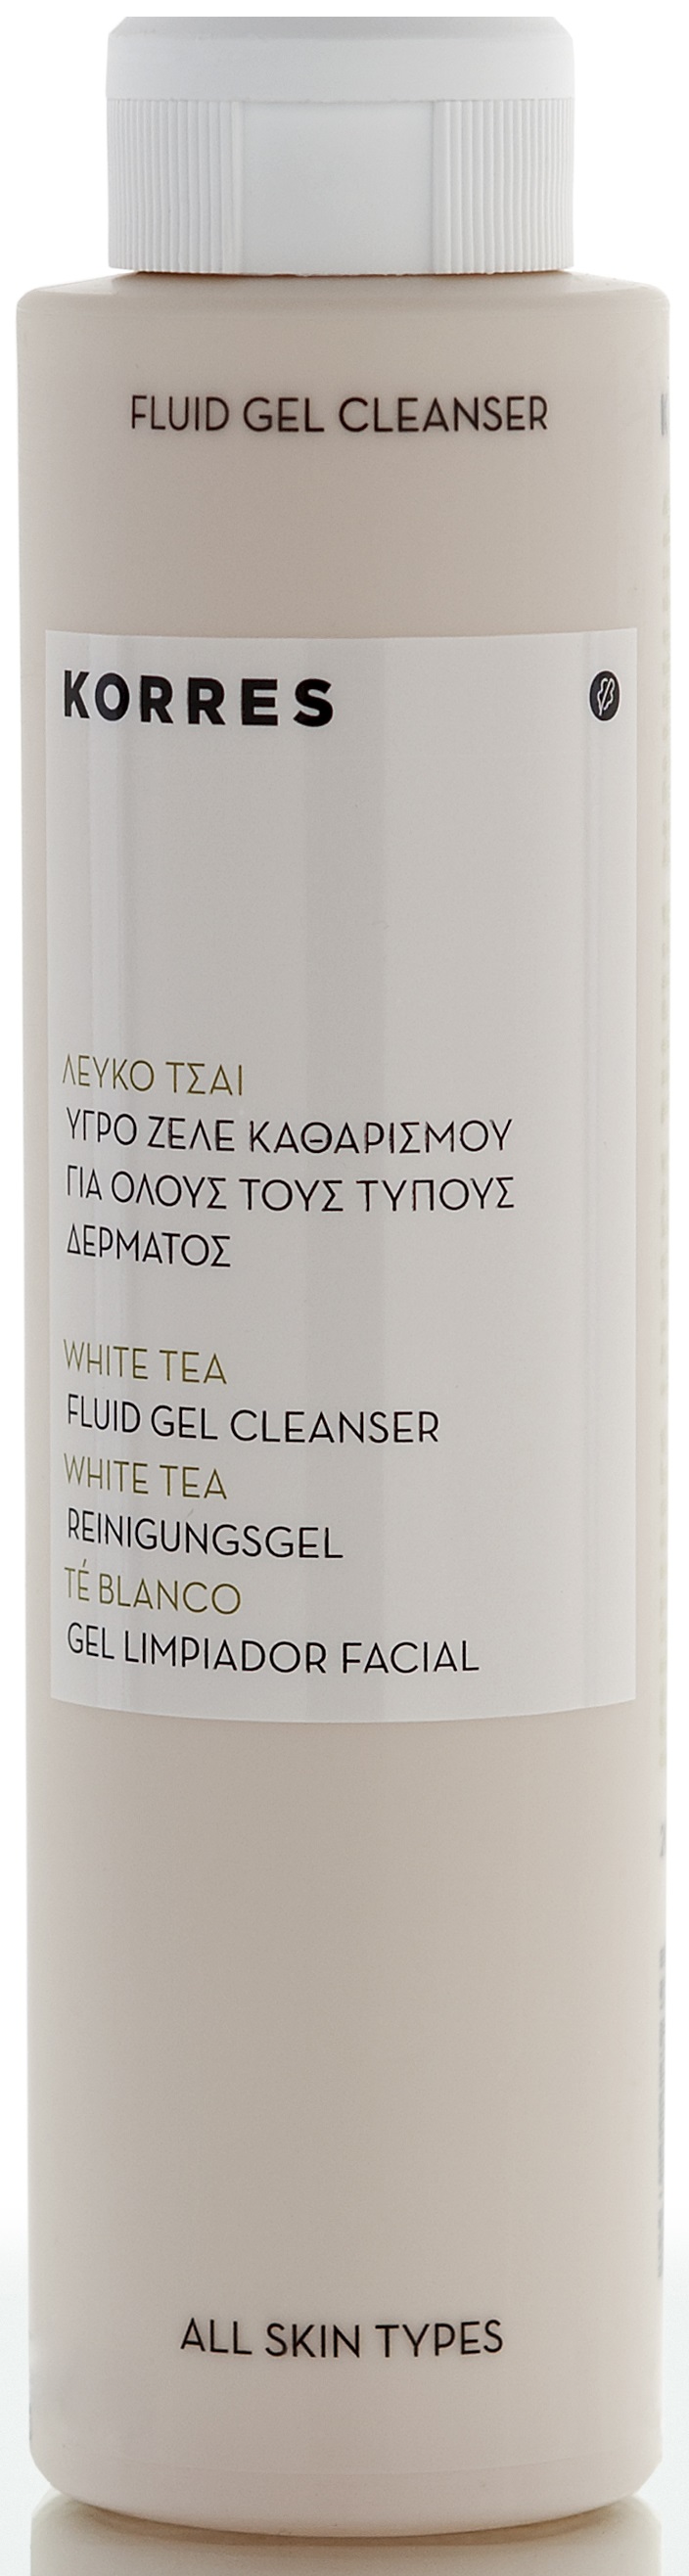 Korres White Tea Fluid Gel Cleanser 200ml